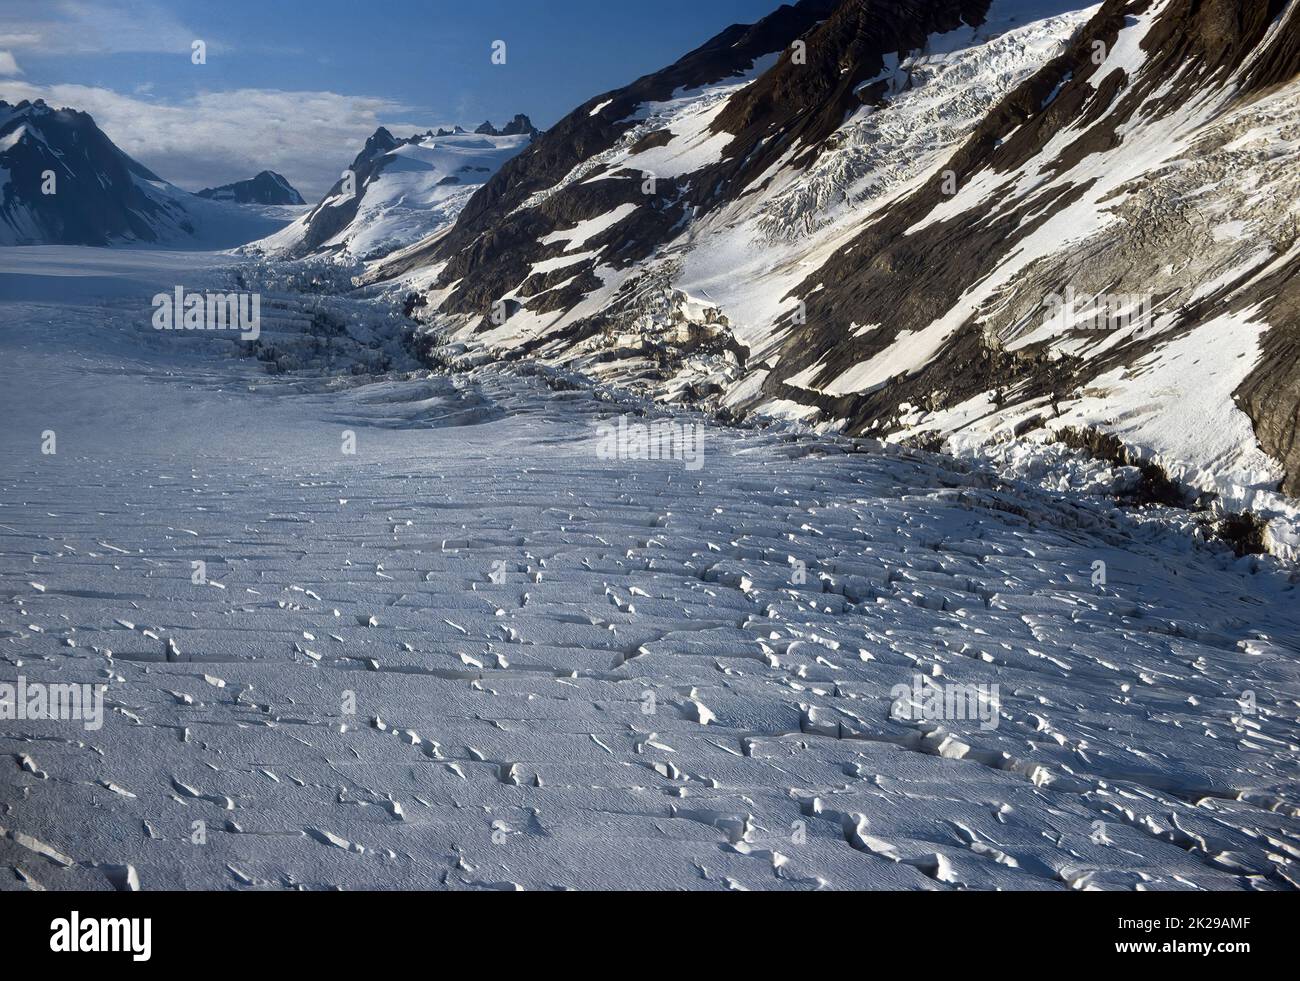 Altos orígenes de un glaciar alpino Foto de stock